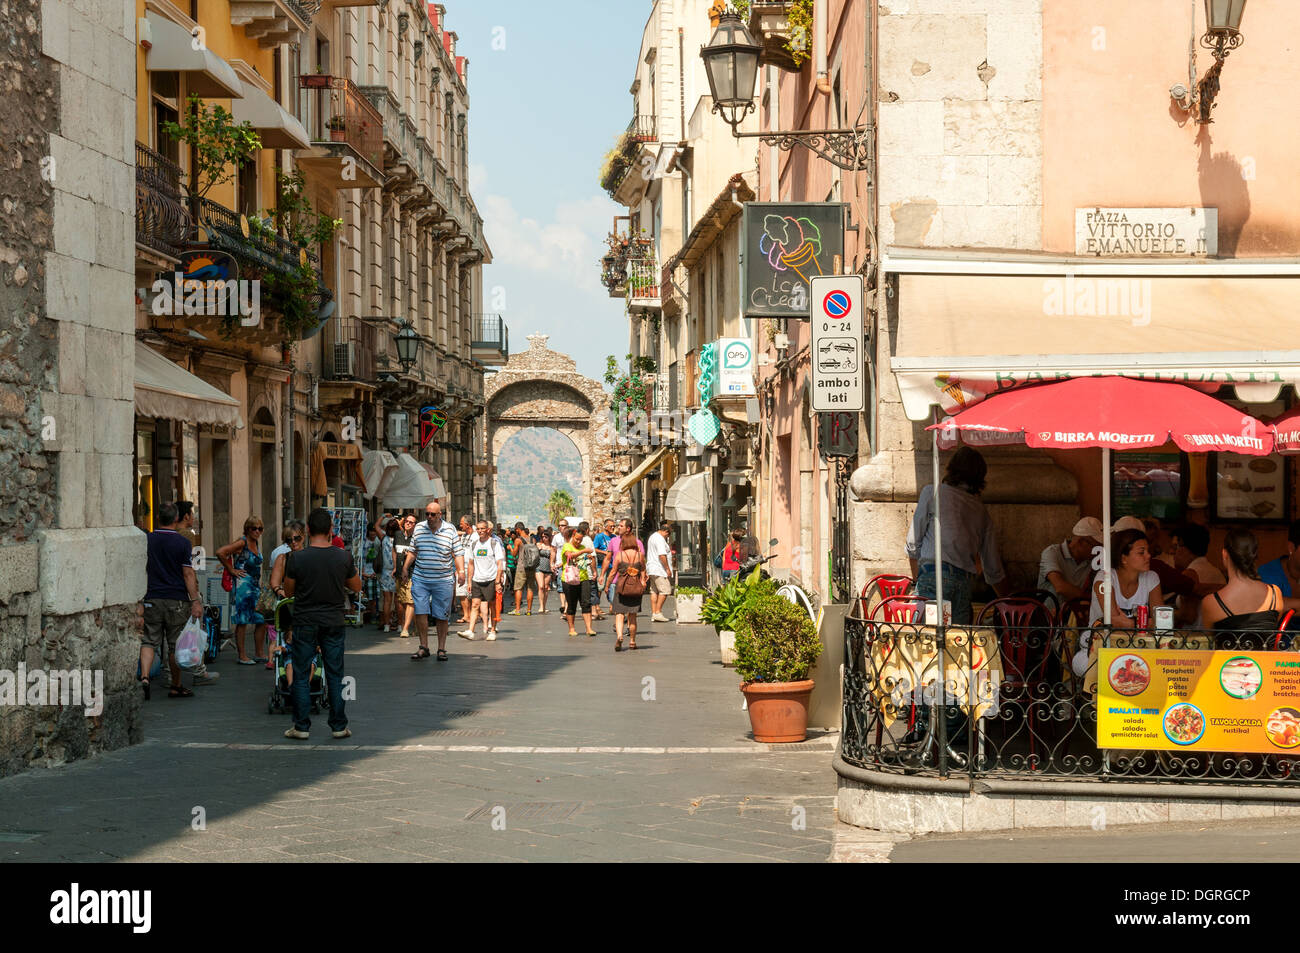 Street in Taormina, Sicily, Italy Stock Photo